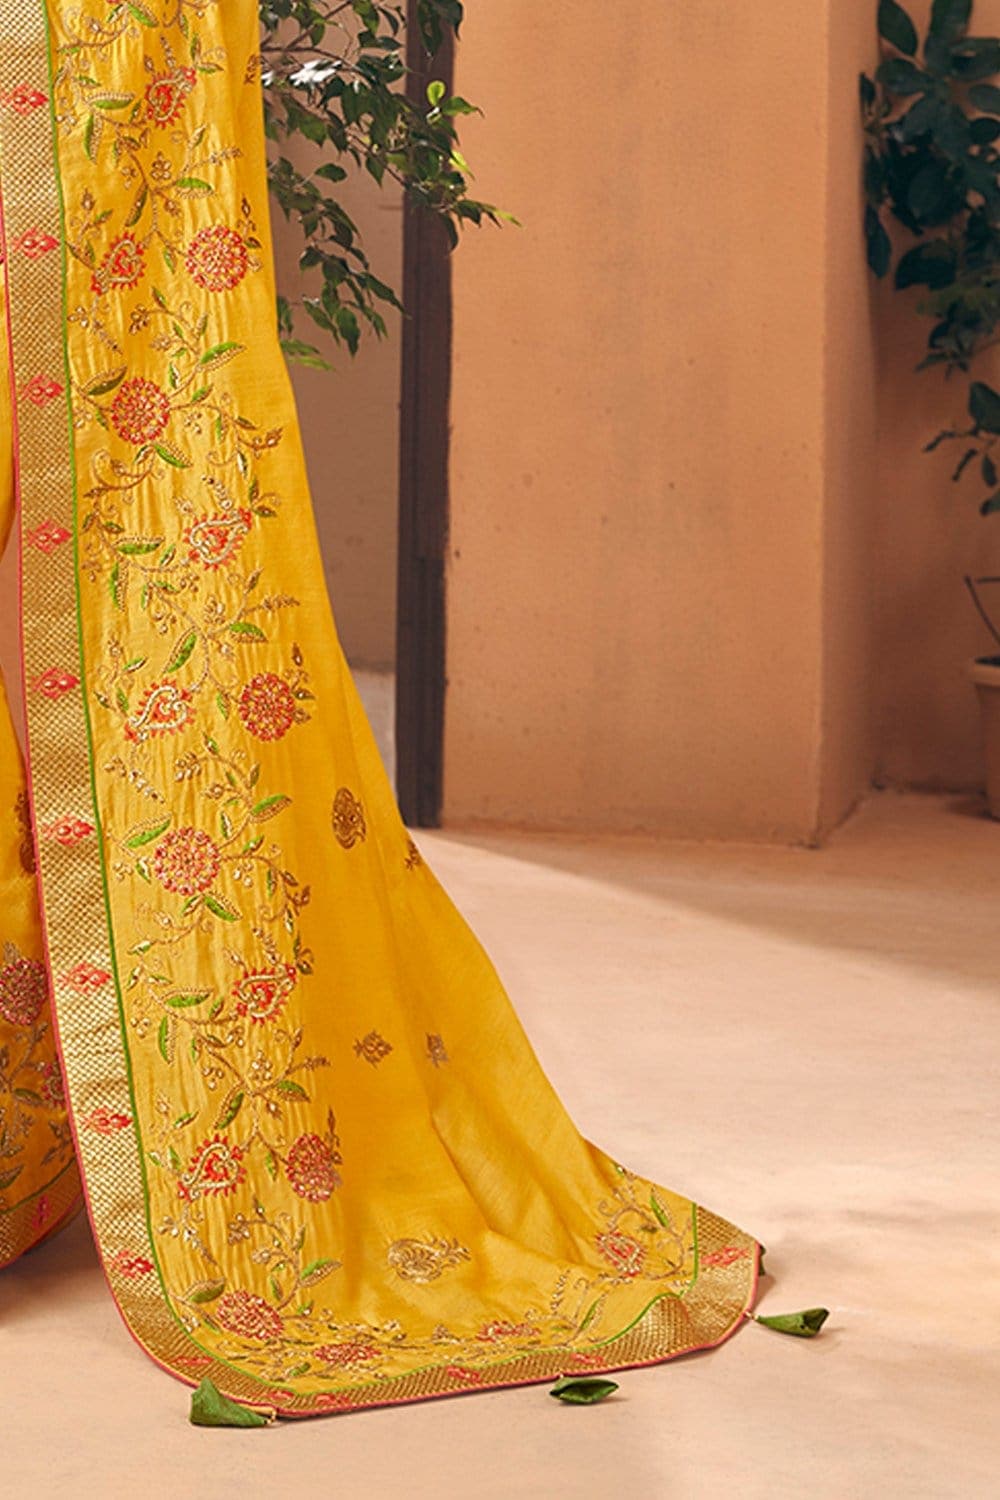 Yellow Beautiful Designer Banarasi Saree